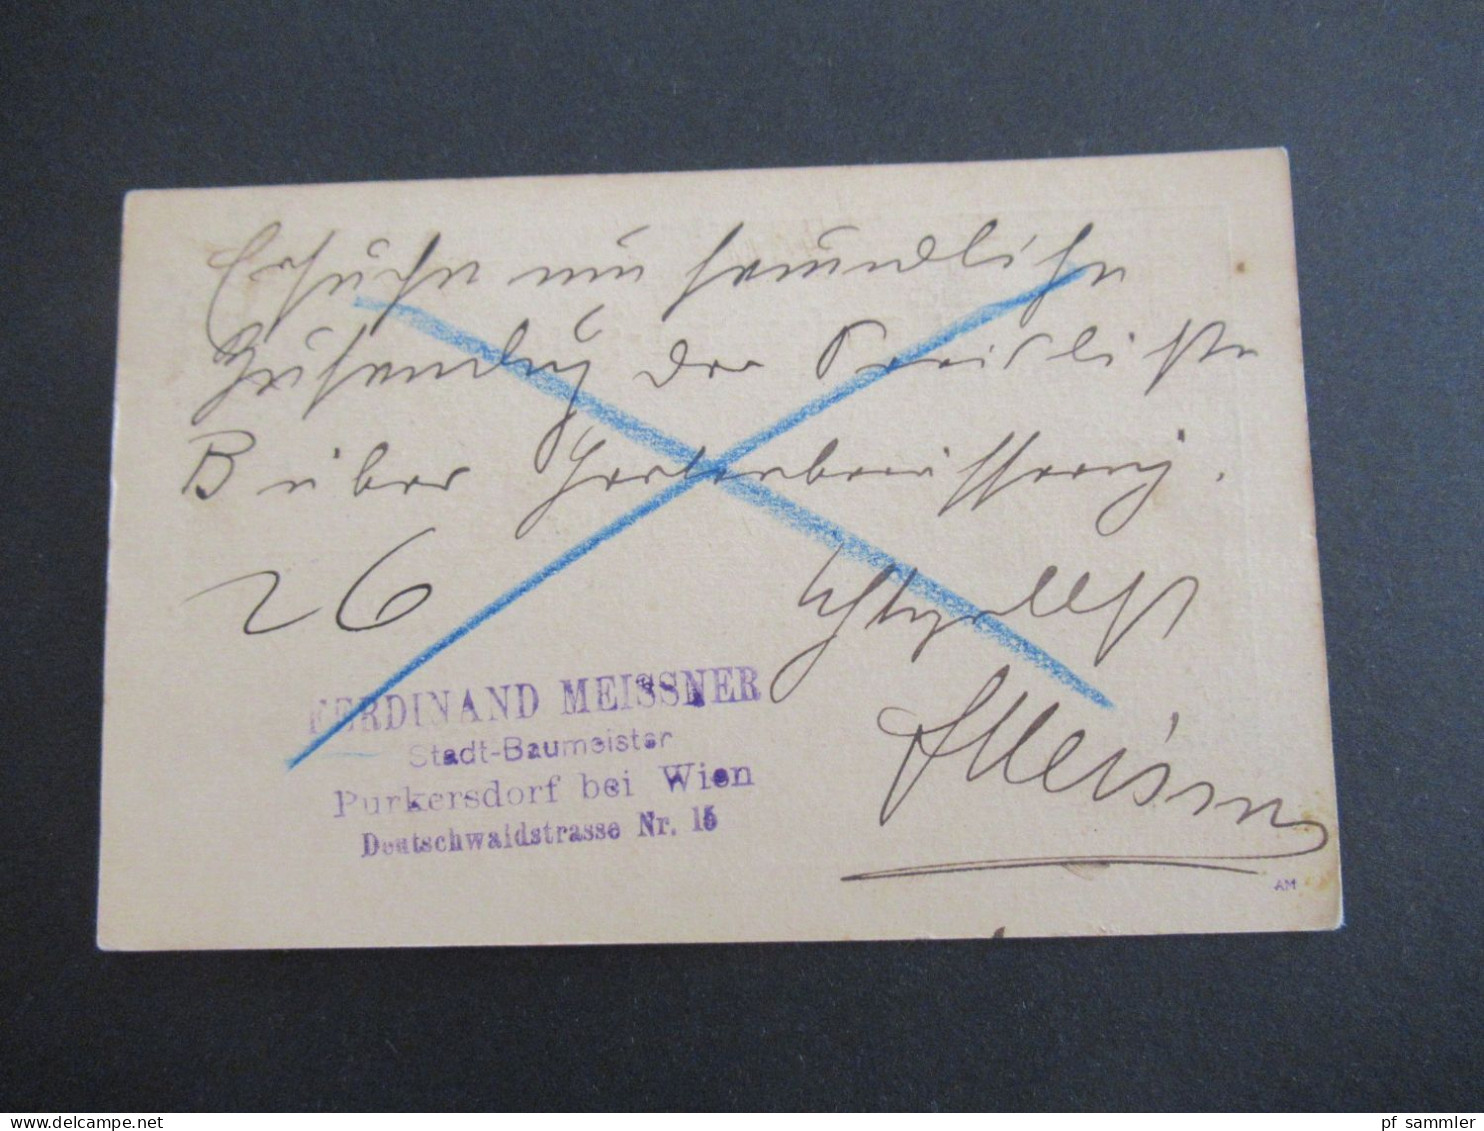 Österreich 1901 GA 5 Heller Strichstempel Vöslau Nach Billwerder Bergedorf Mit Ank. Gitterstempel Bergedorf - Postcards